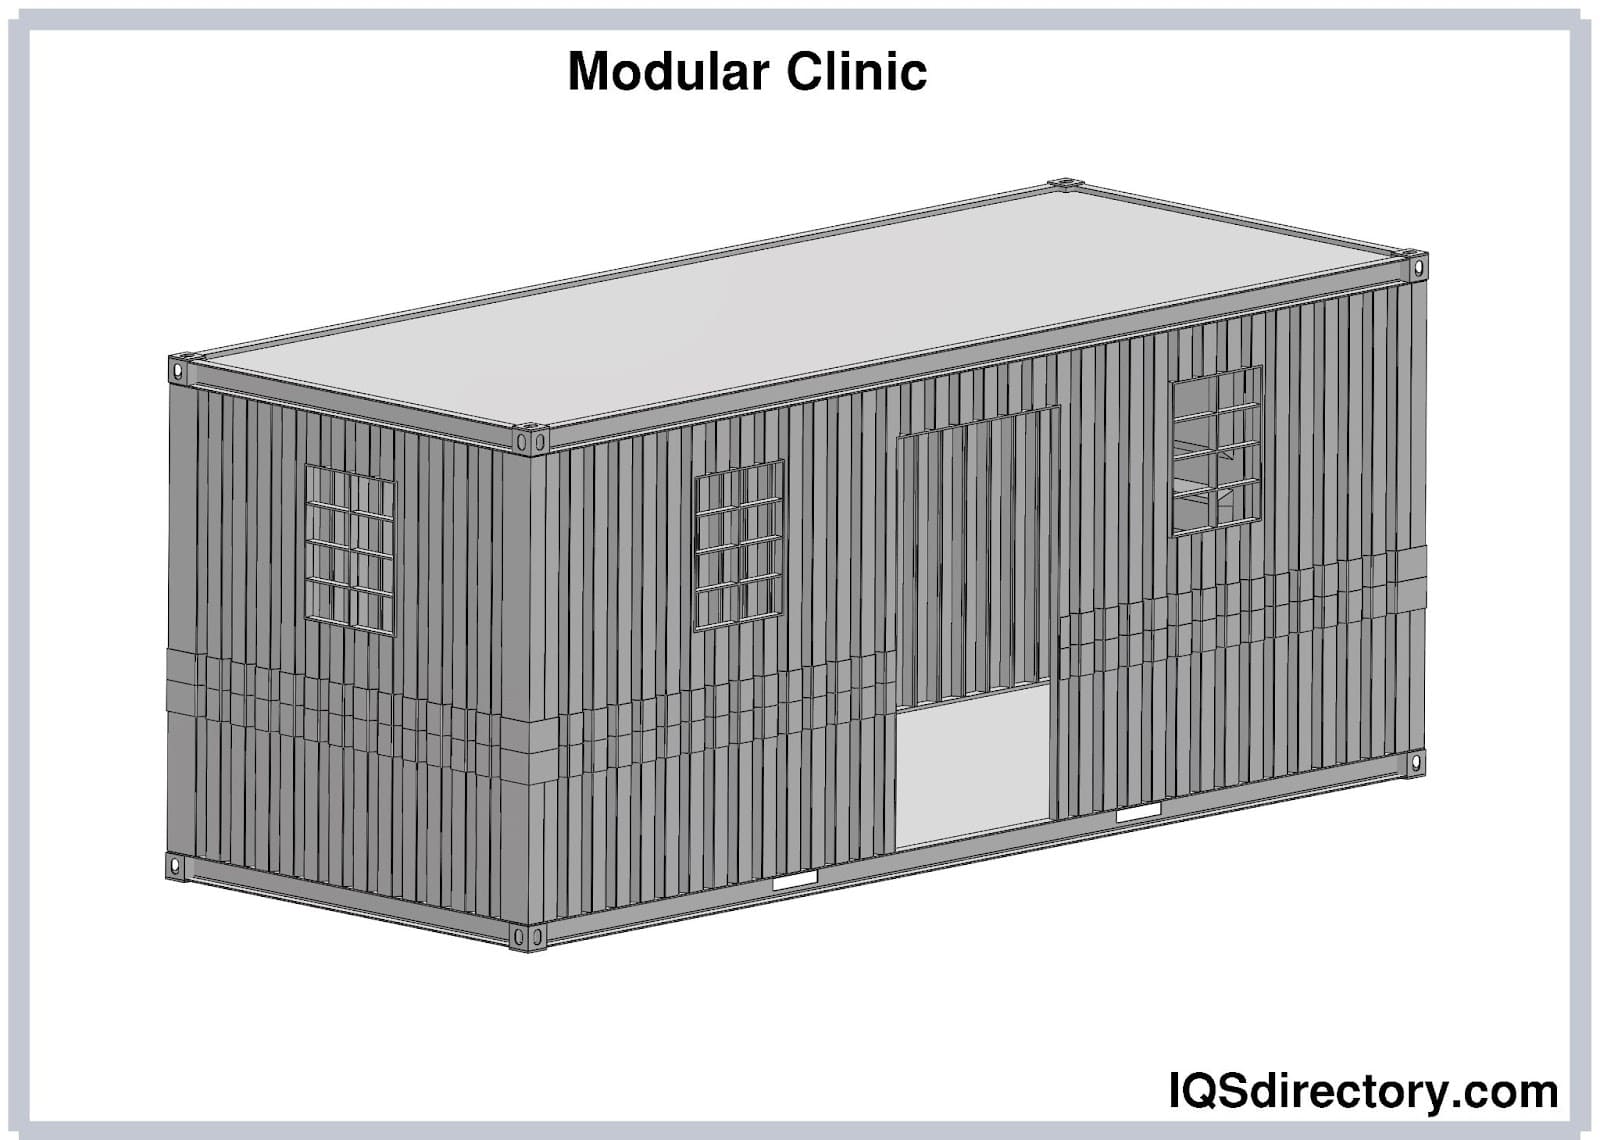 Modular Clinic